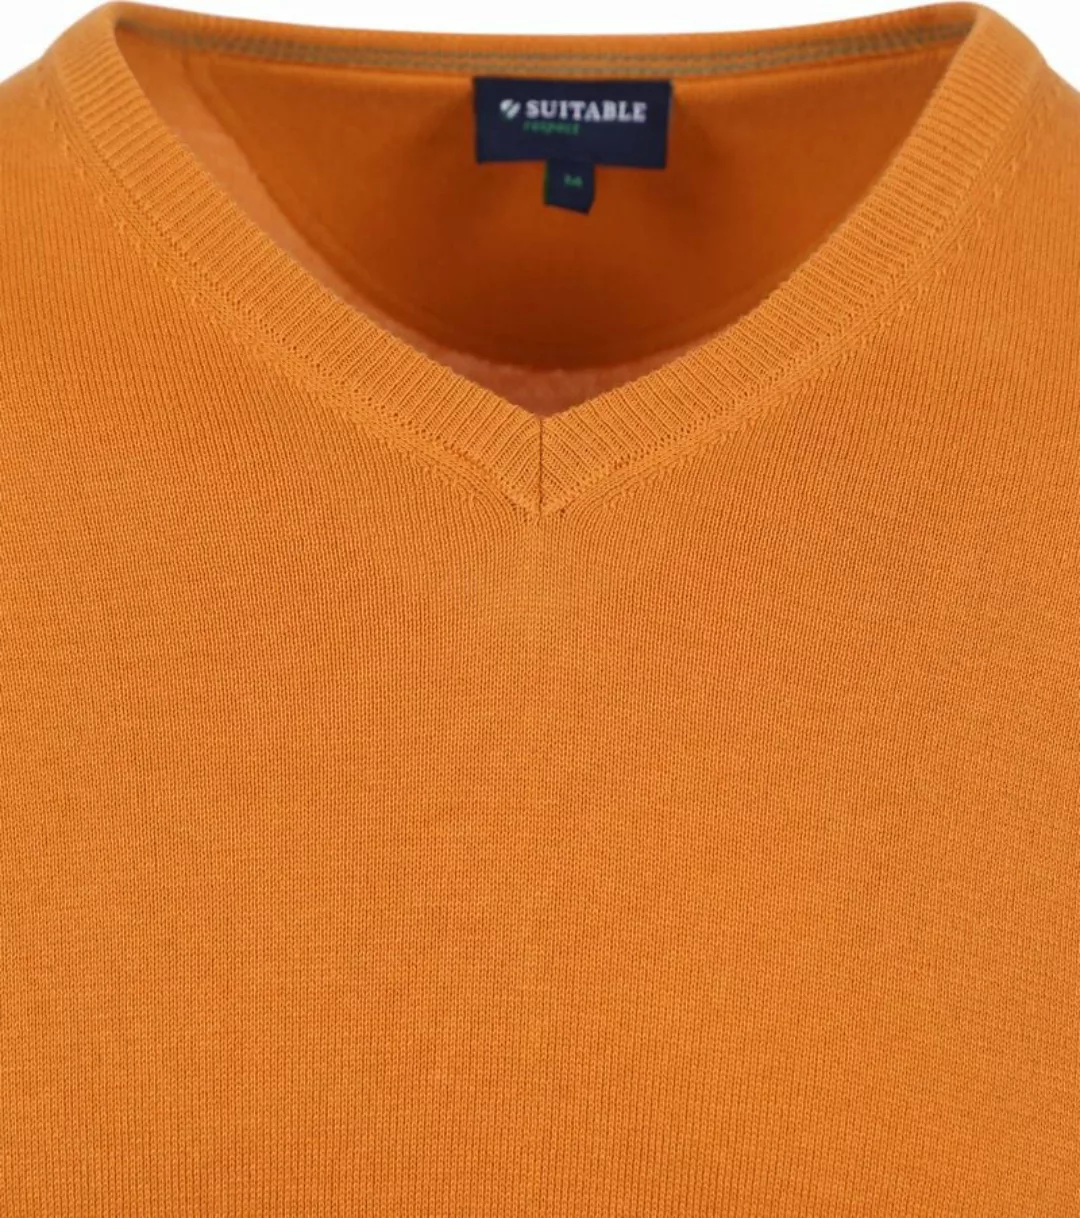 Suitable Respect Bio-Baumwolle Pullover Vinir Orange - Größe M günstig online kaufen